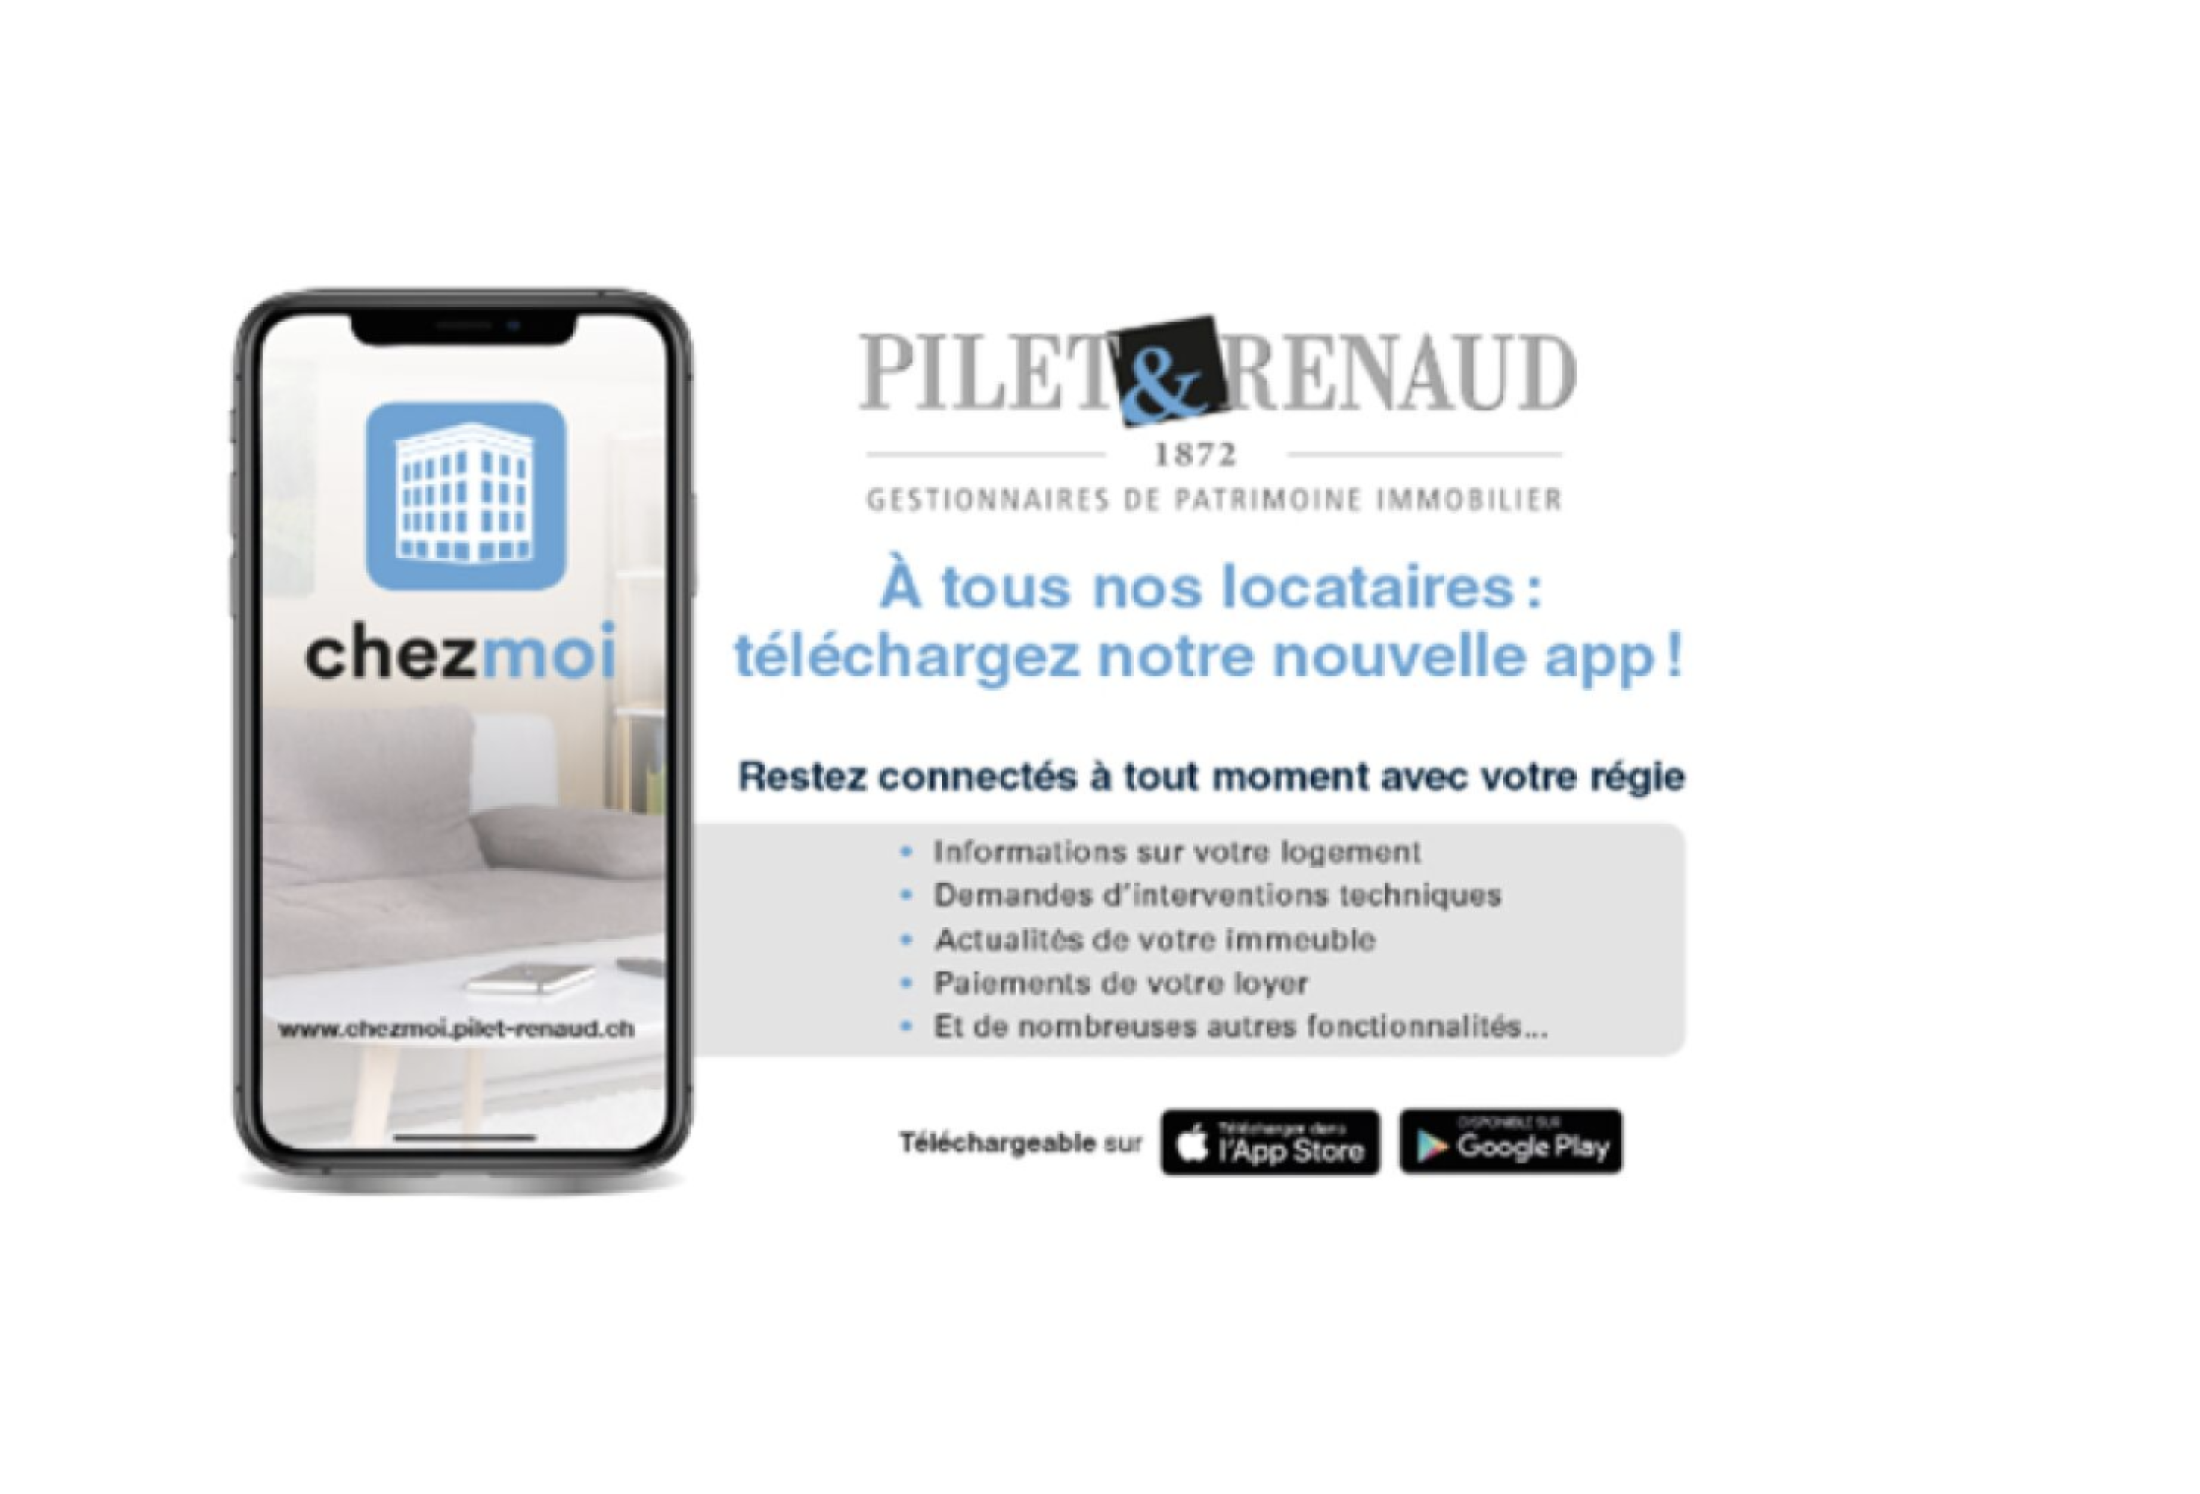 Application locataires Pilet & Renaud : actions de communication